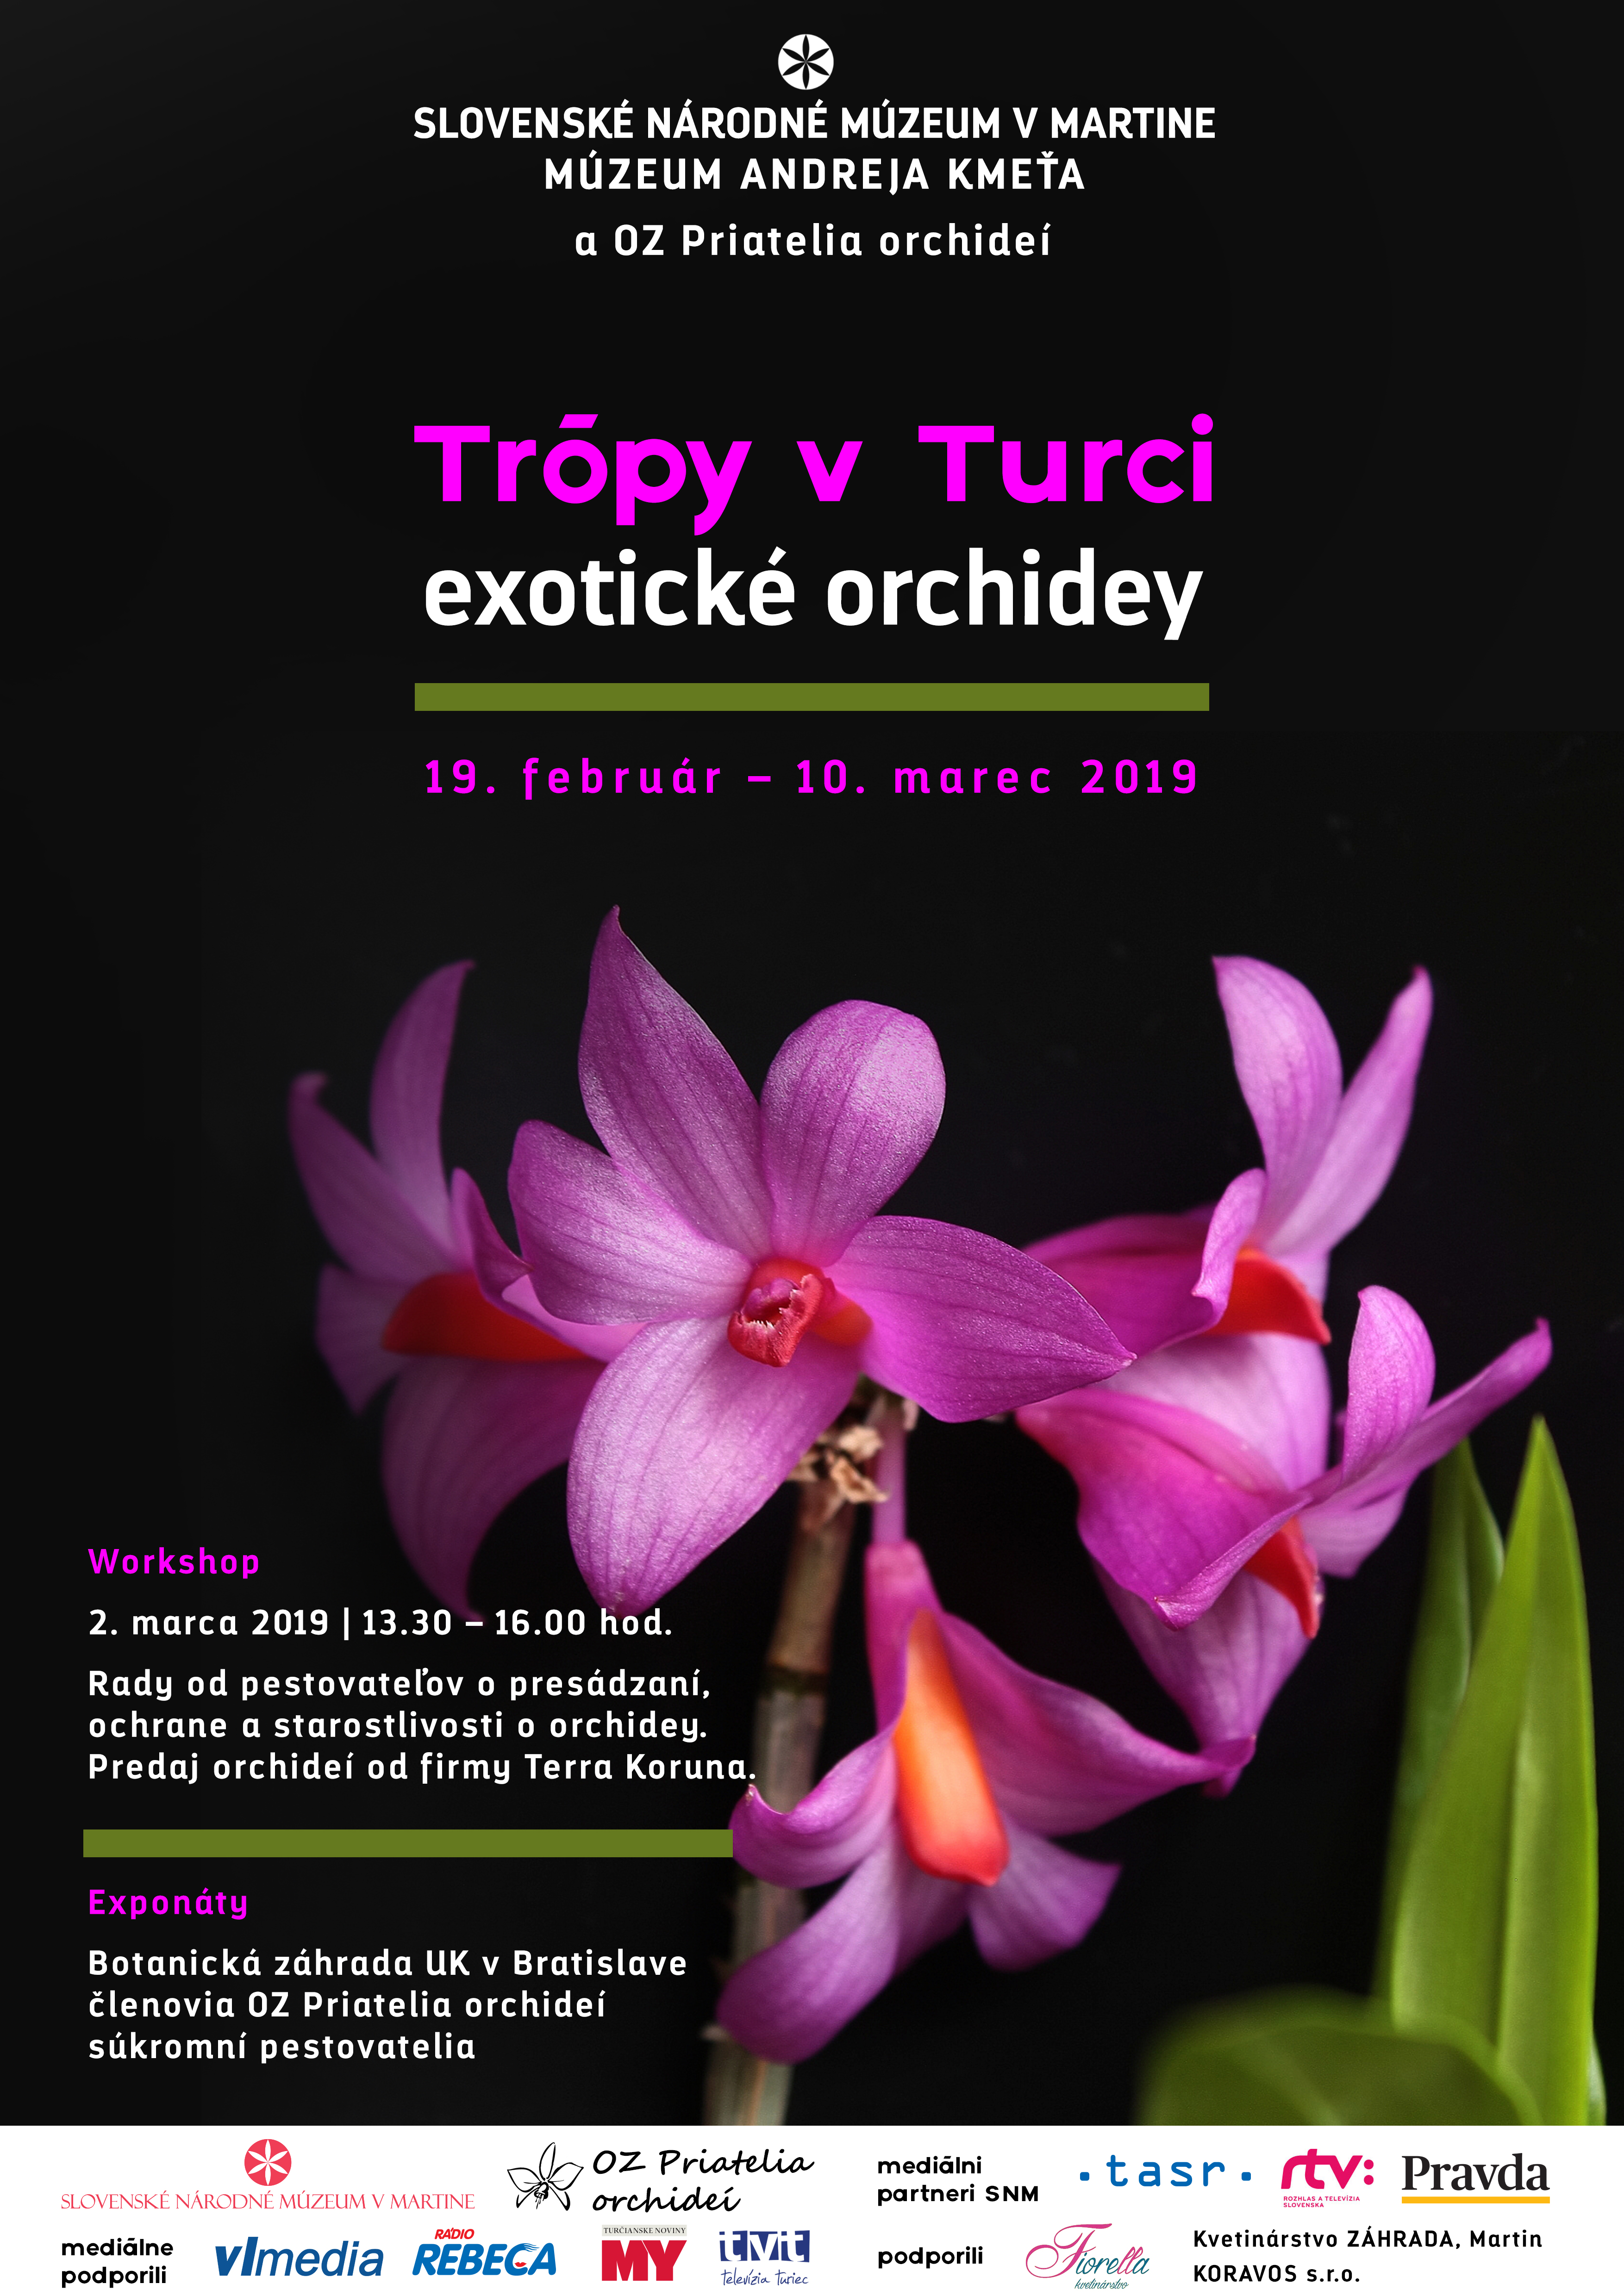 tropy v turci exoticke orchidey muzeum andreja kmeta